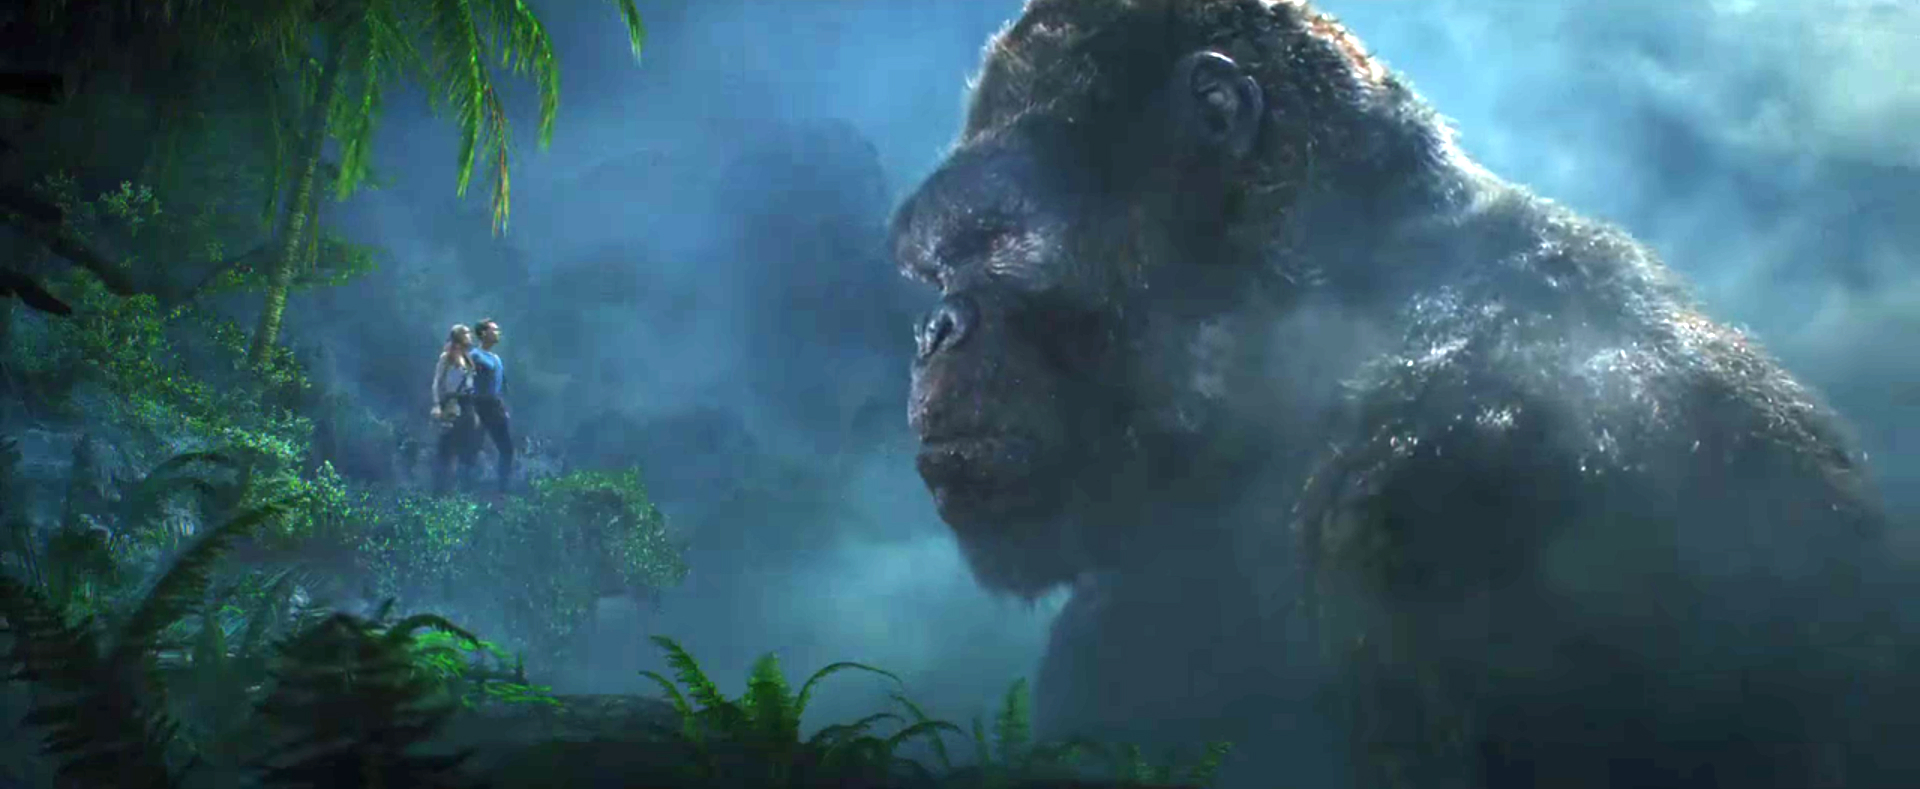 Đạo diễn \'Kong: Skull Island\' không muốn làm thêm phim về vũ trụ ...